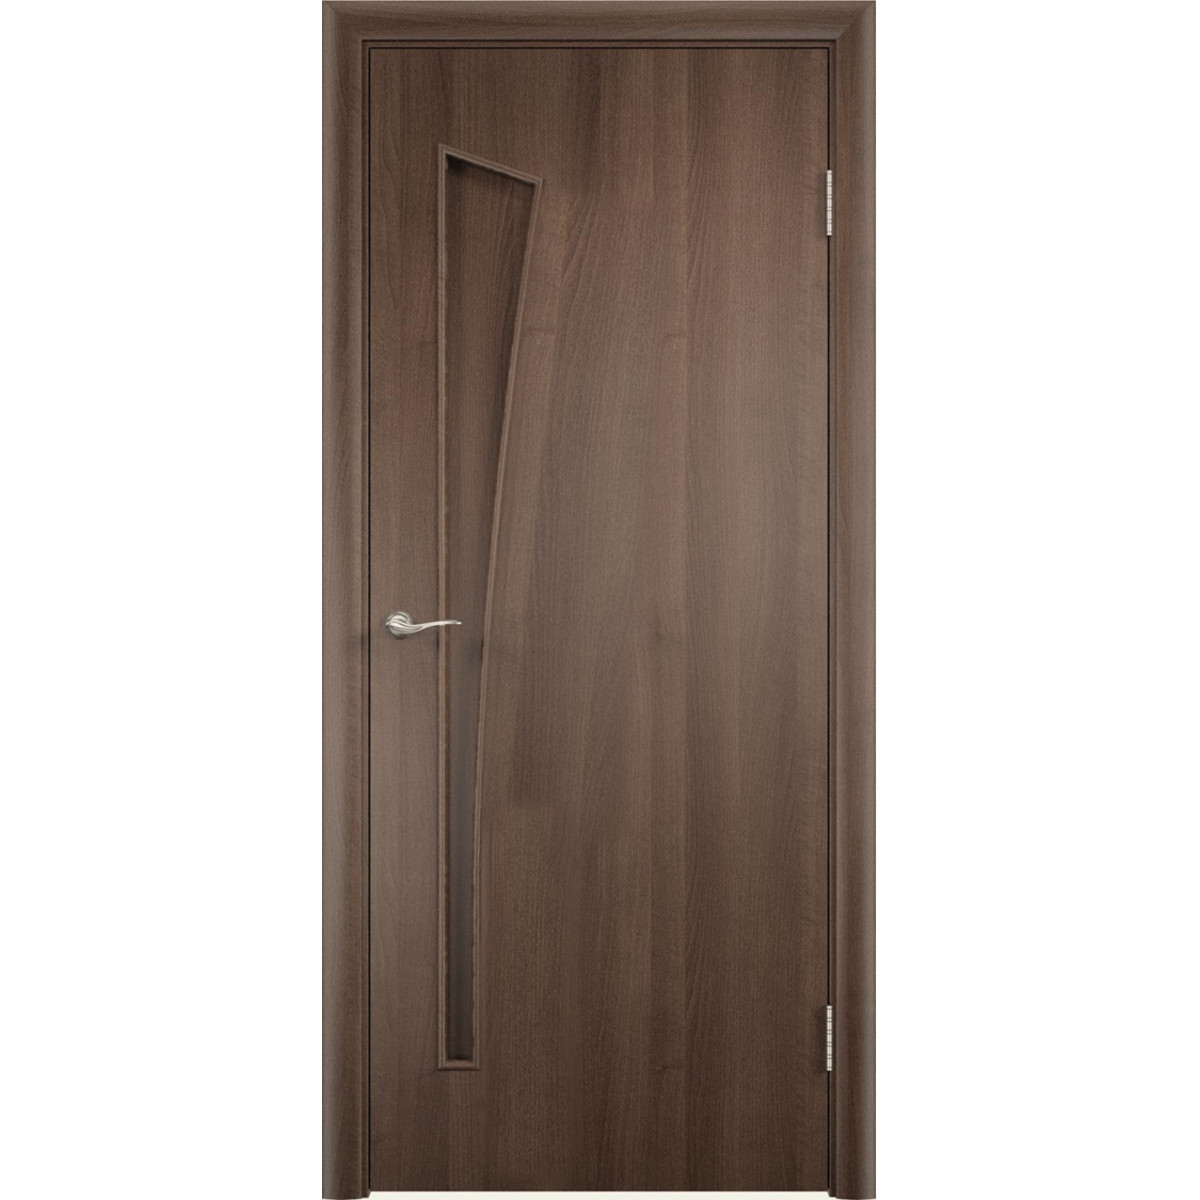 Дверь межкомнатная глухая без замка и петель в комплекте Белеза 60x200 см ламинация цвет дуб тёрнер коричневый